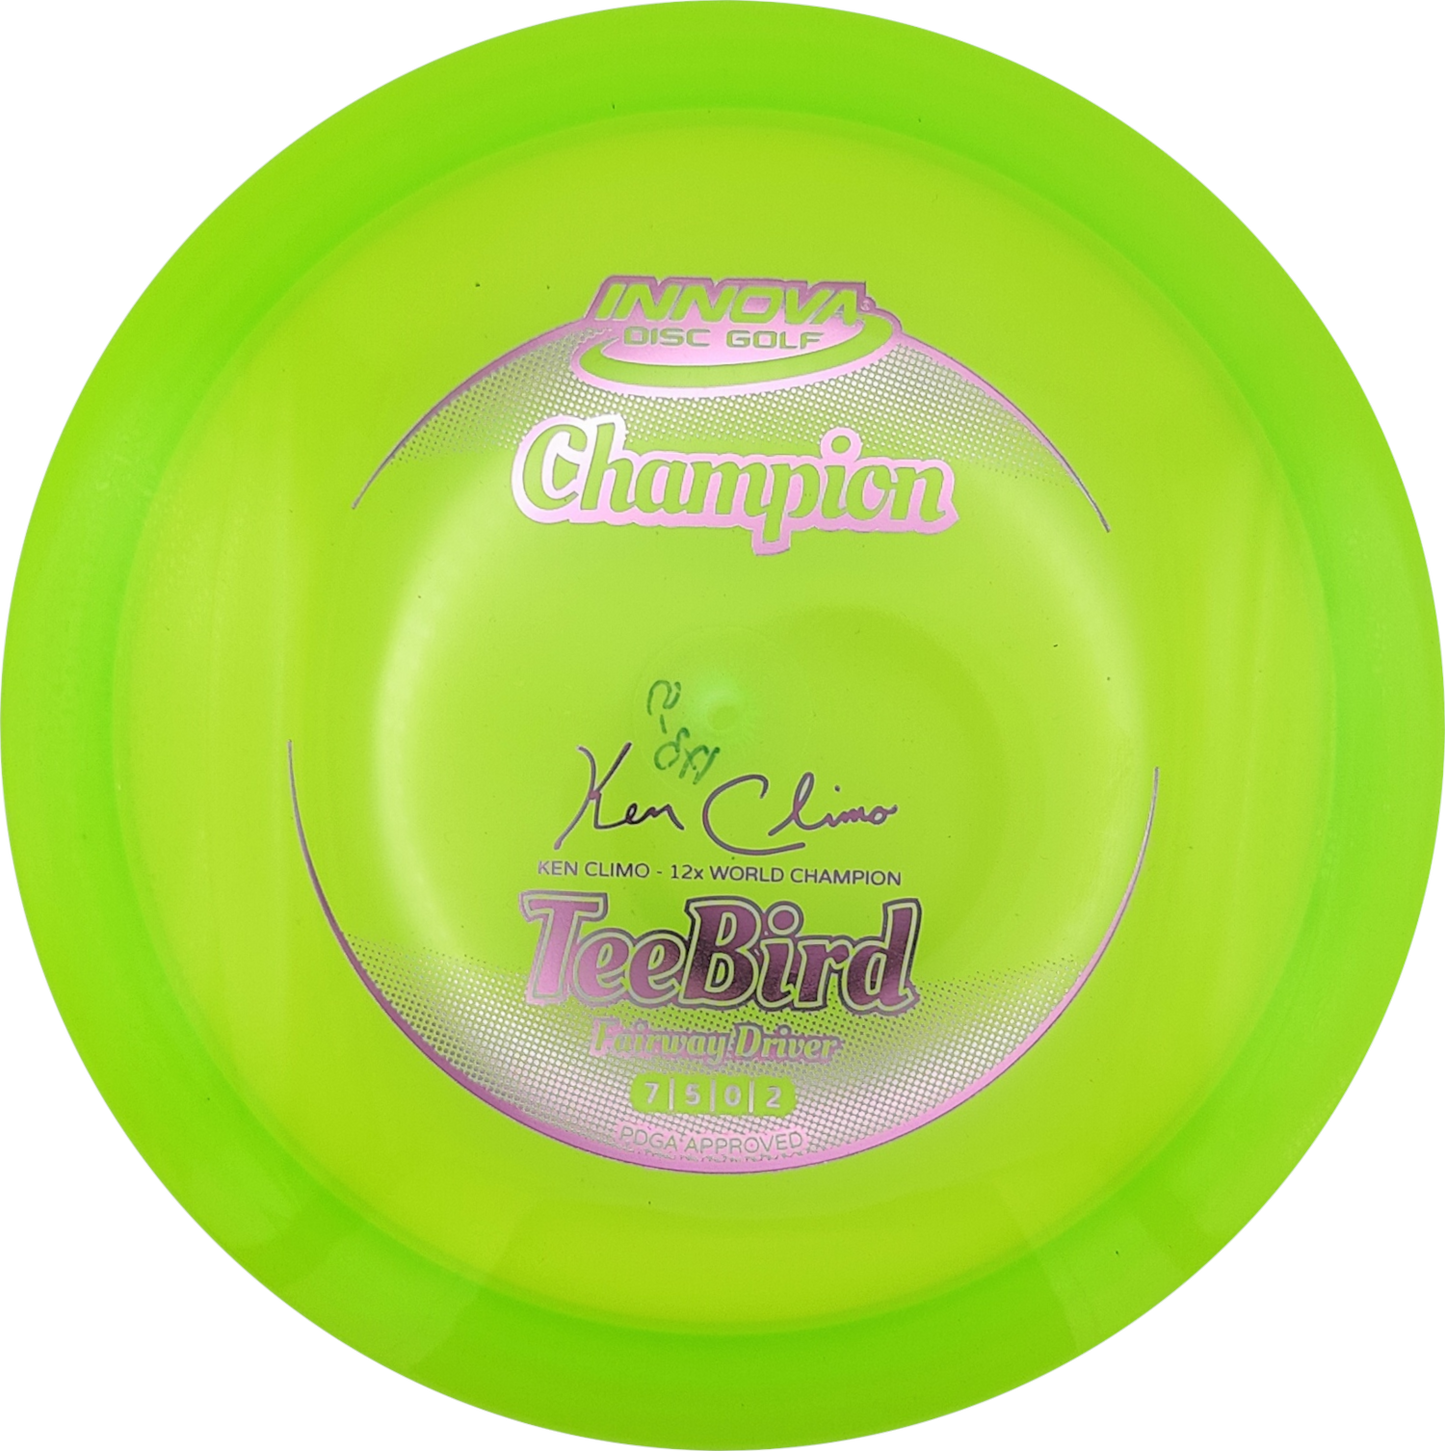 Innova Champion Teebird